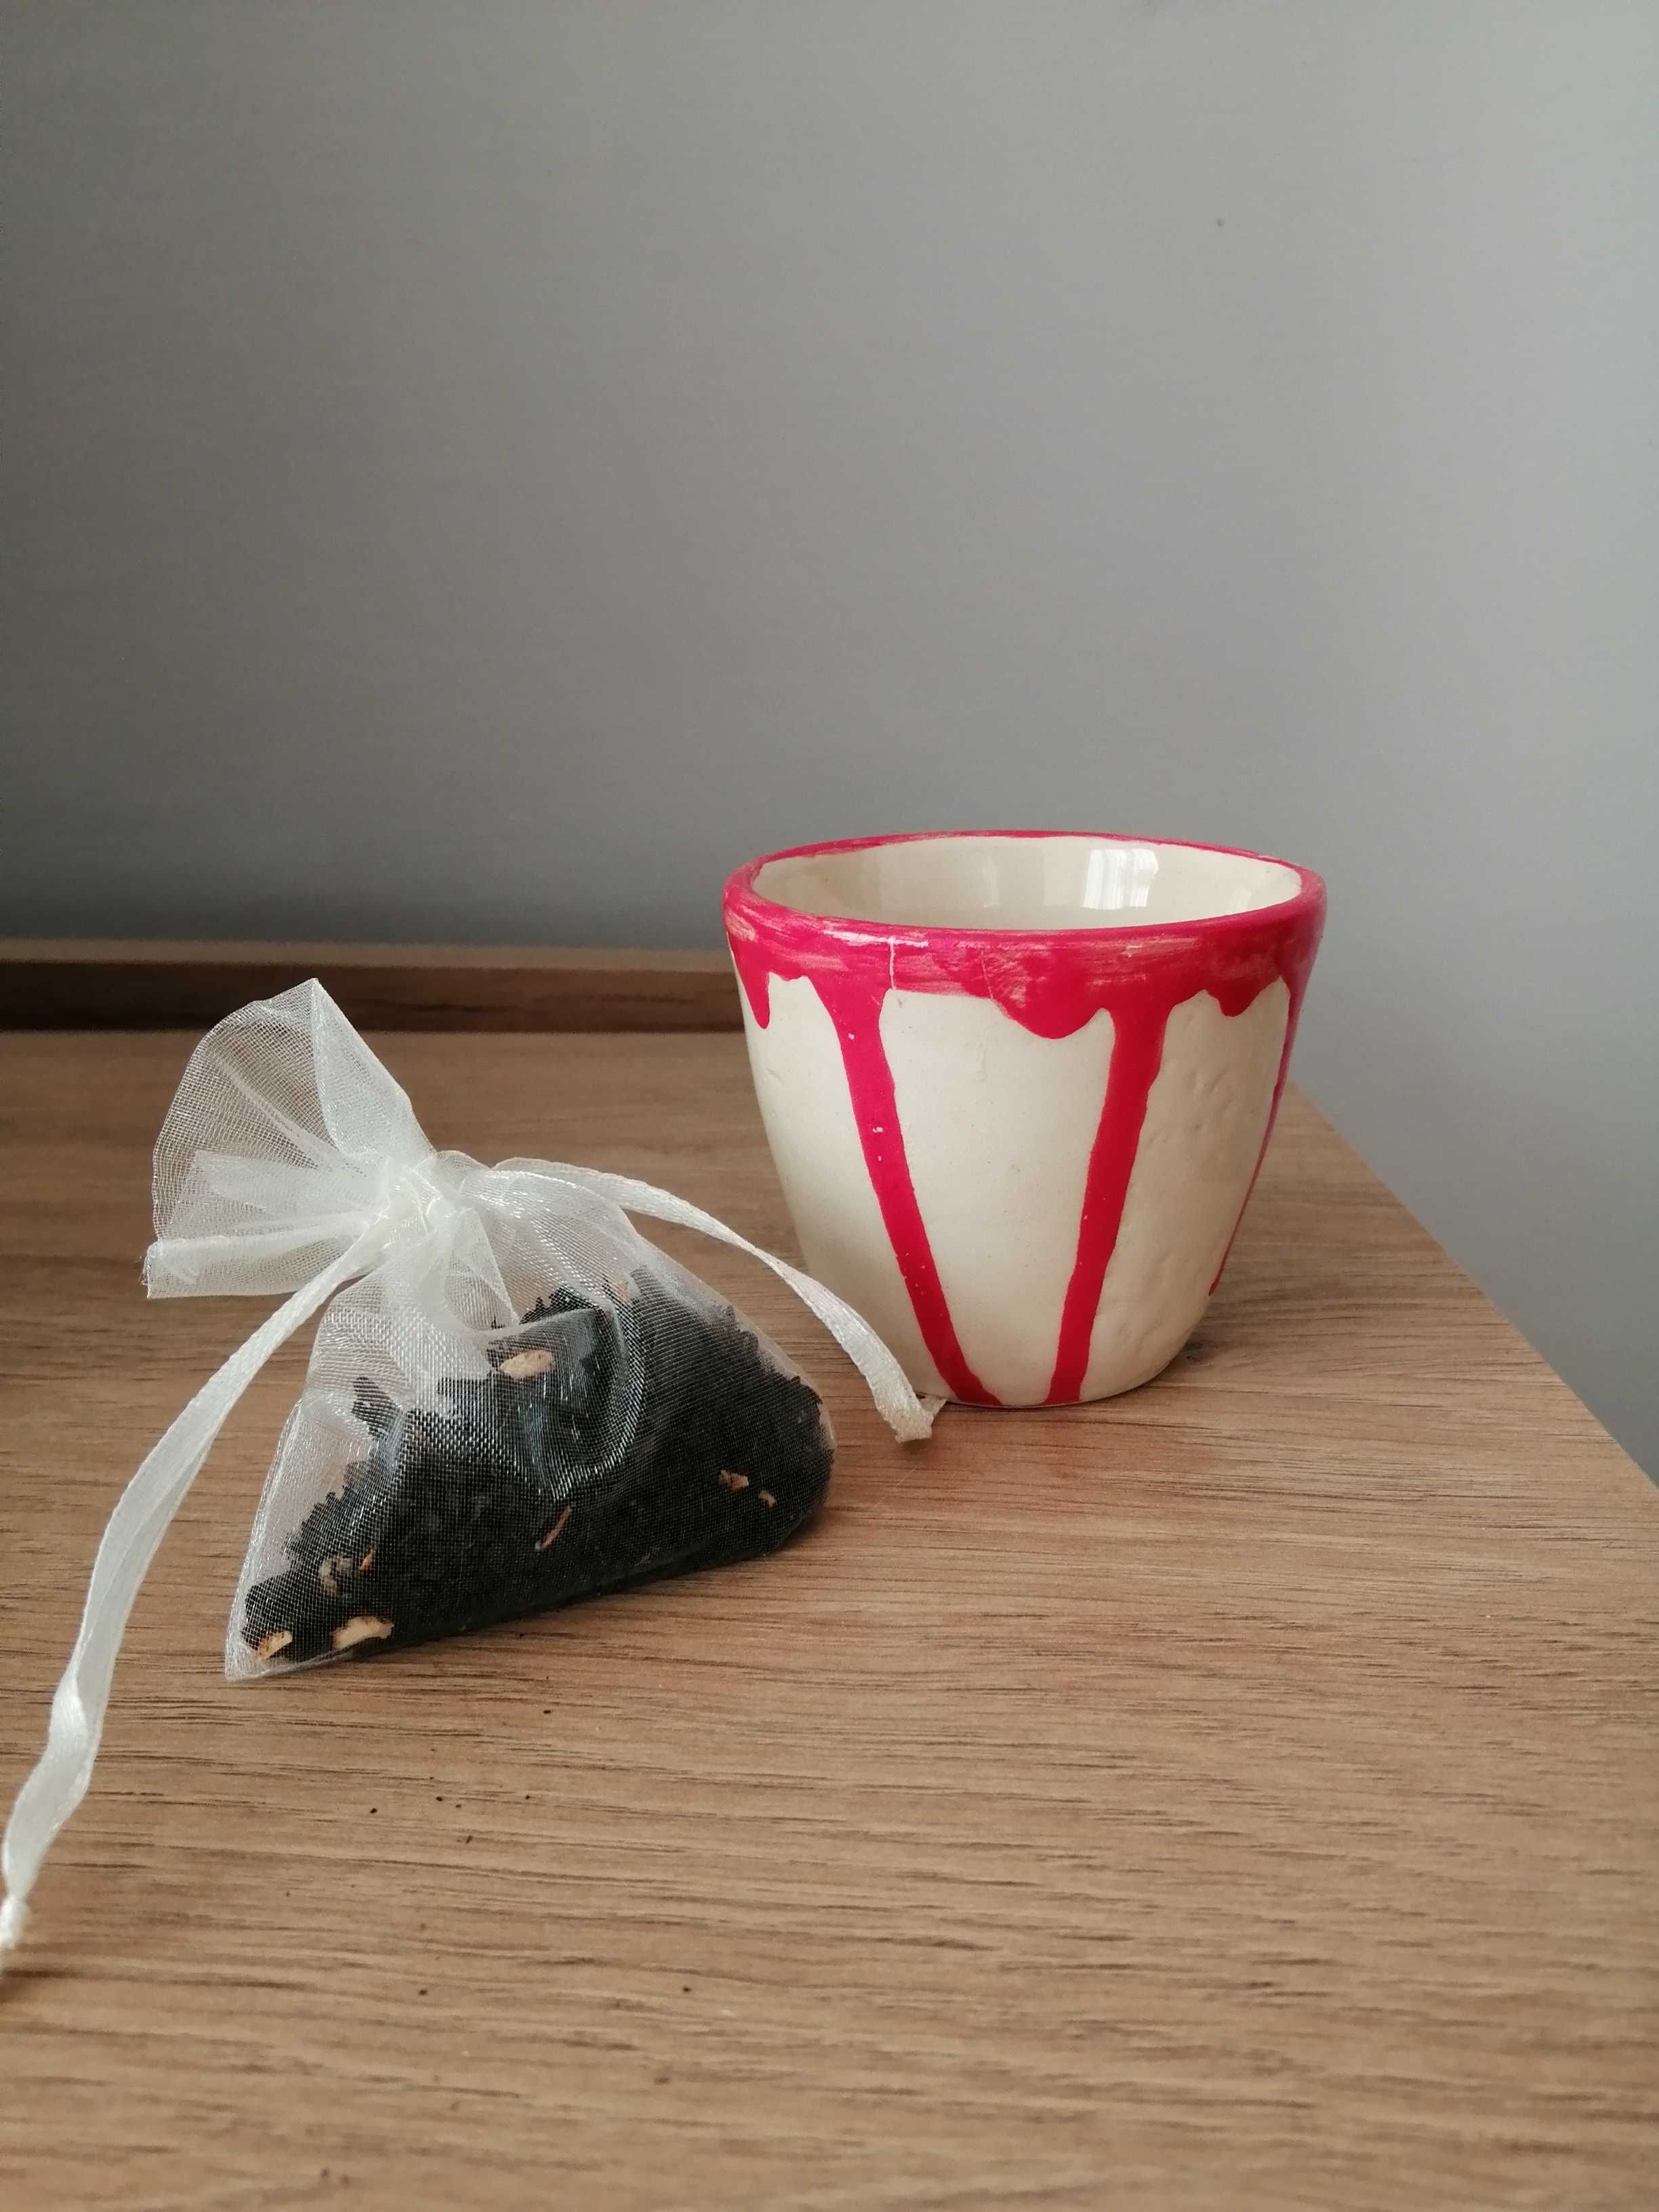 1. Nowy! Zestaw herbata + filiżanka porcelanowa